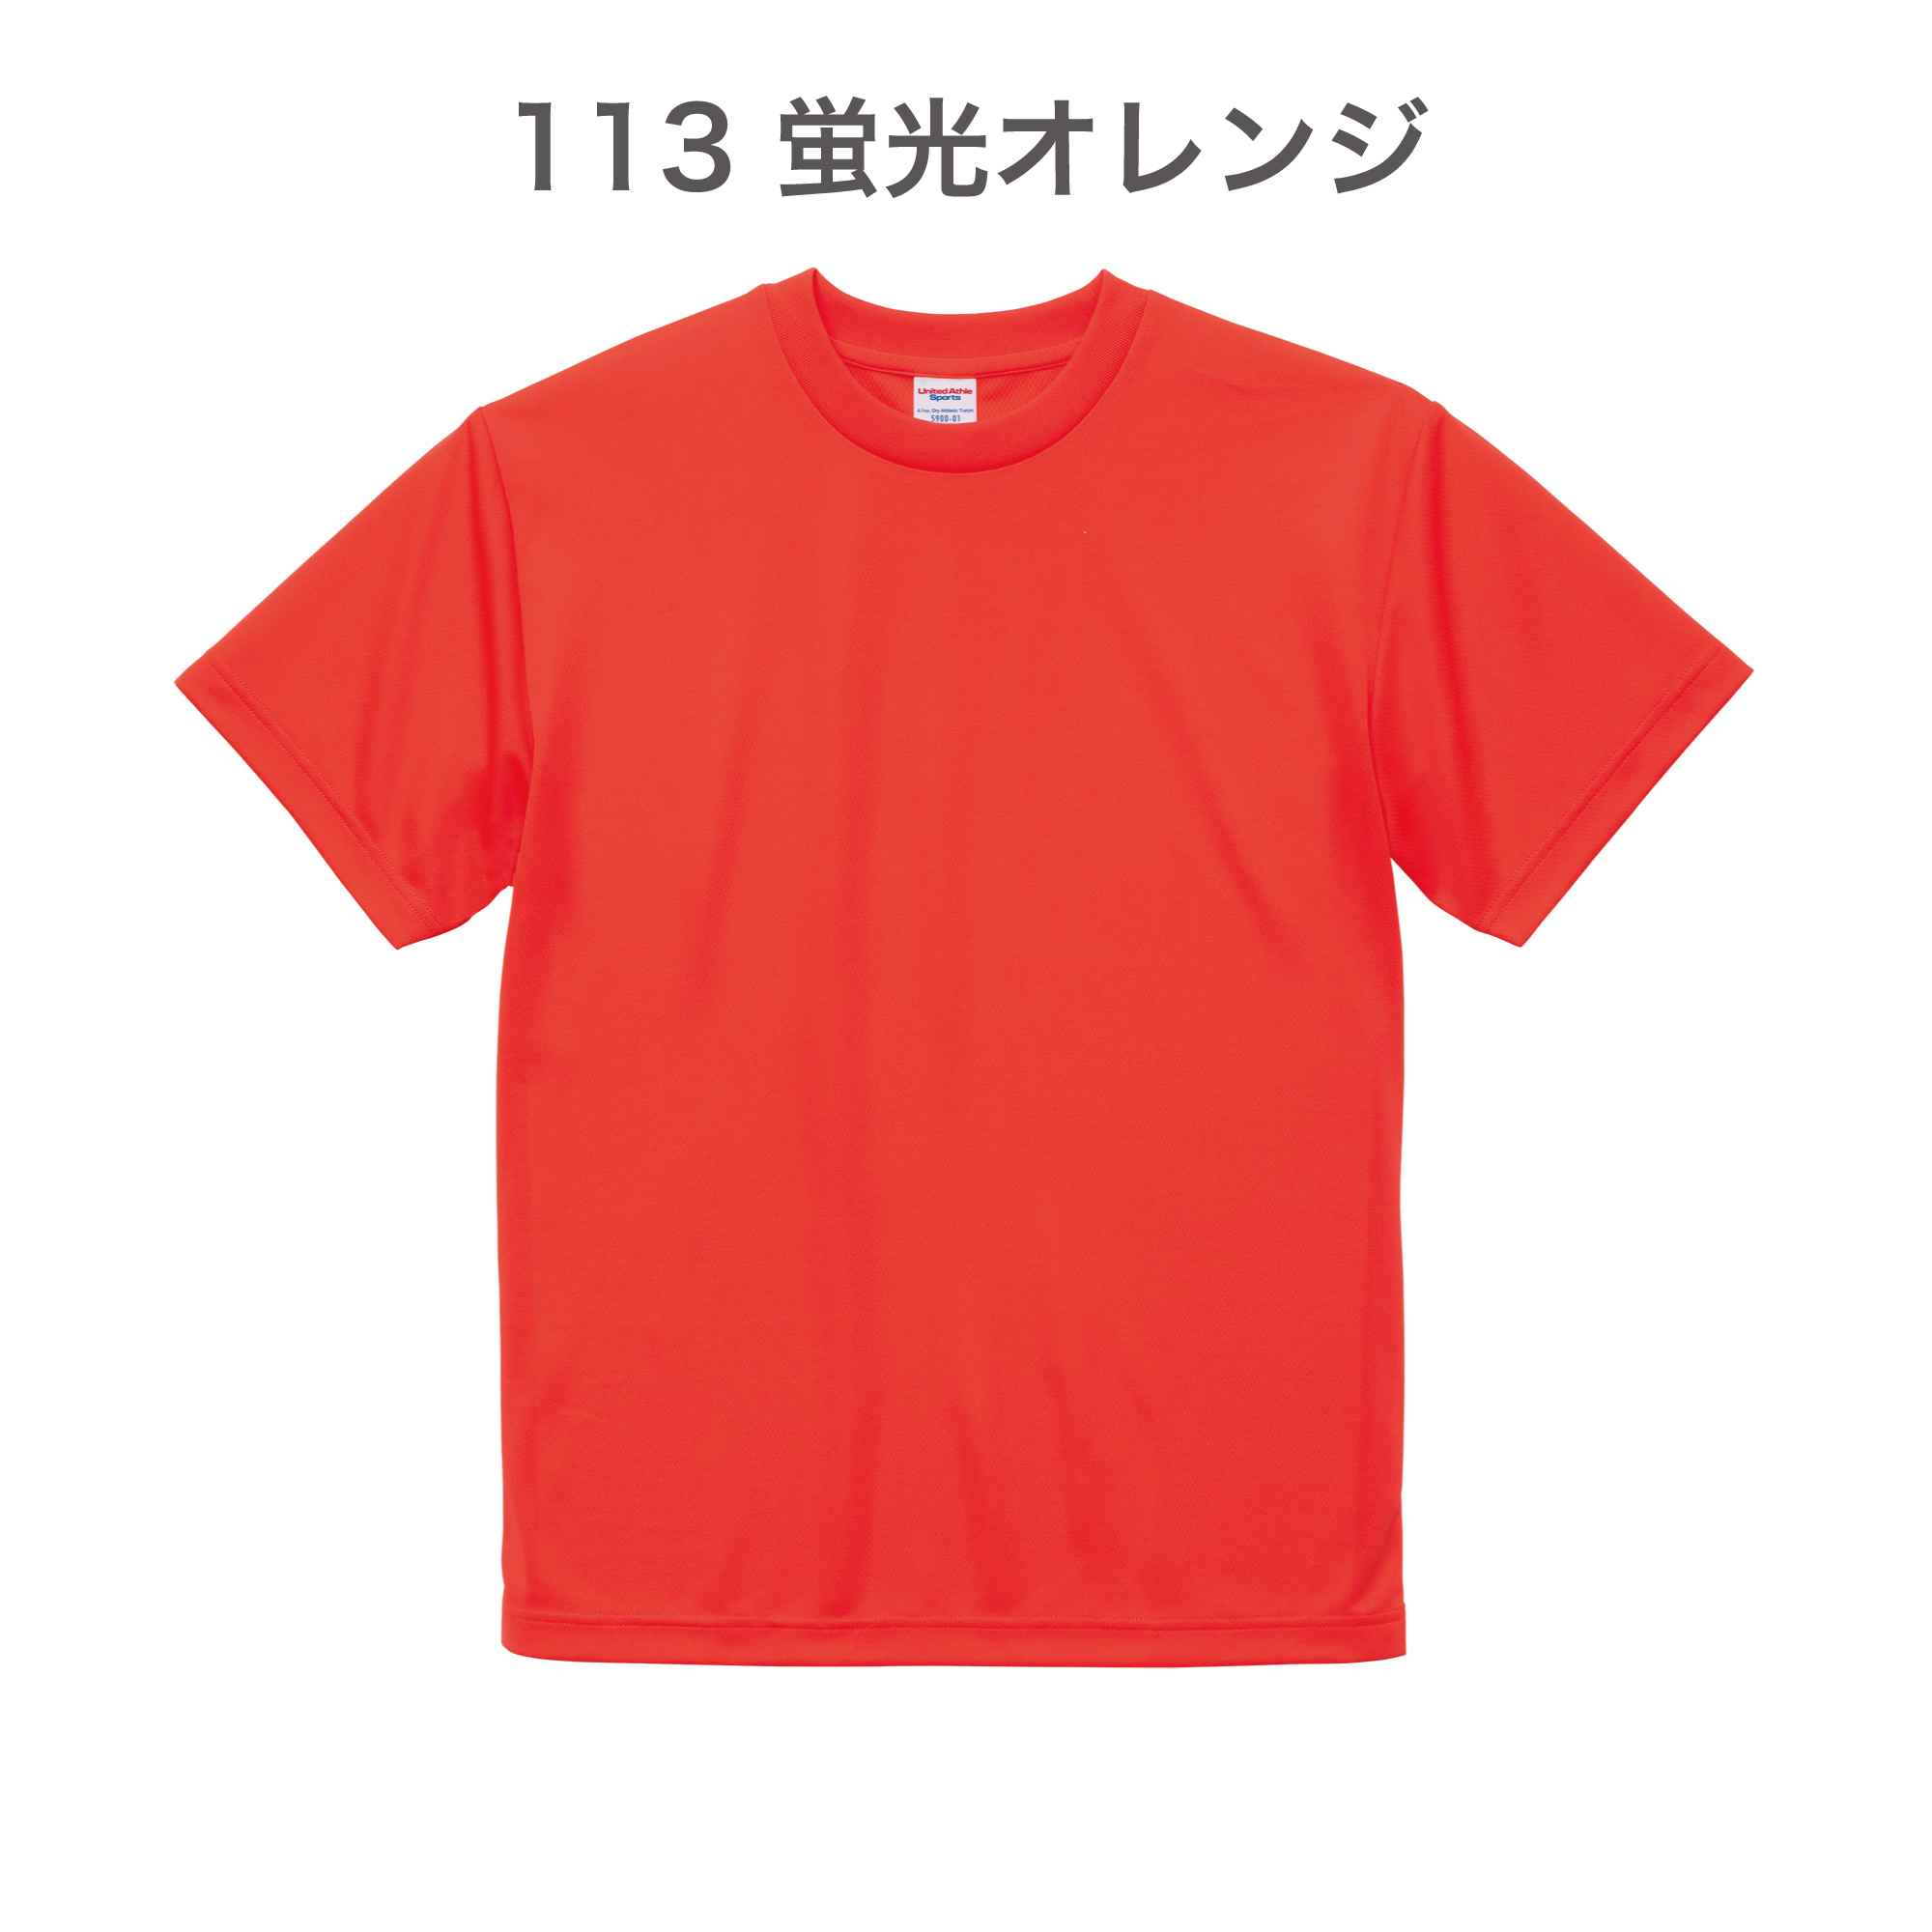 113-蛍光オレンジ